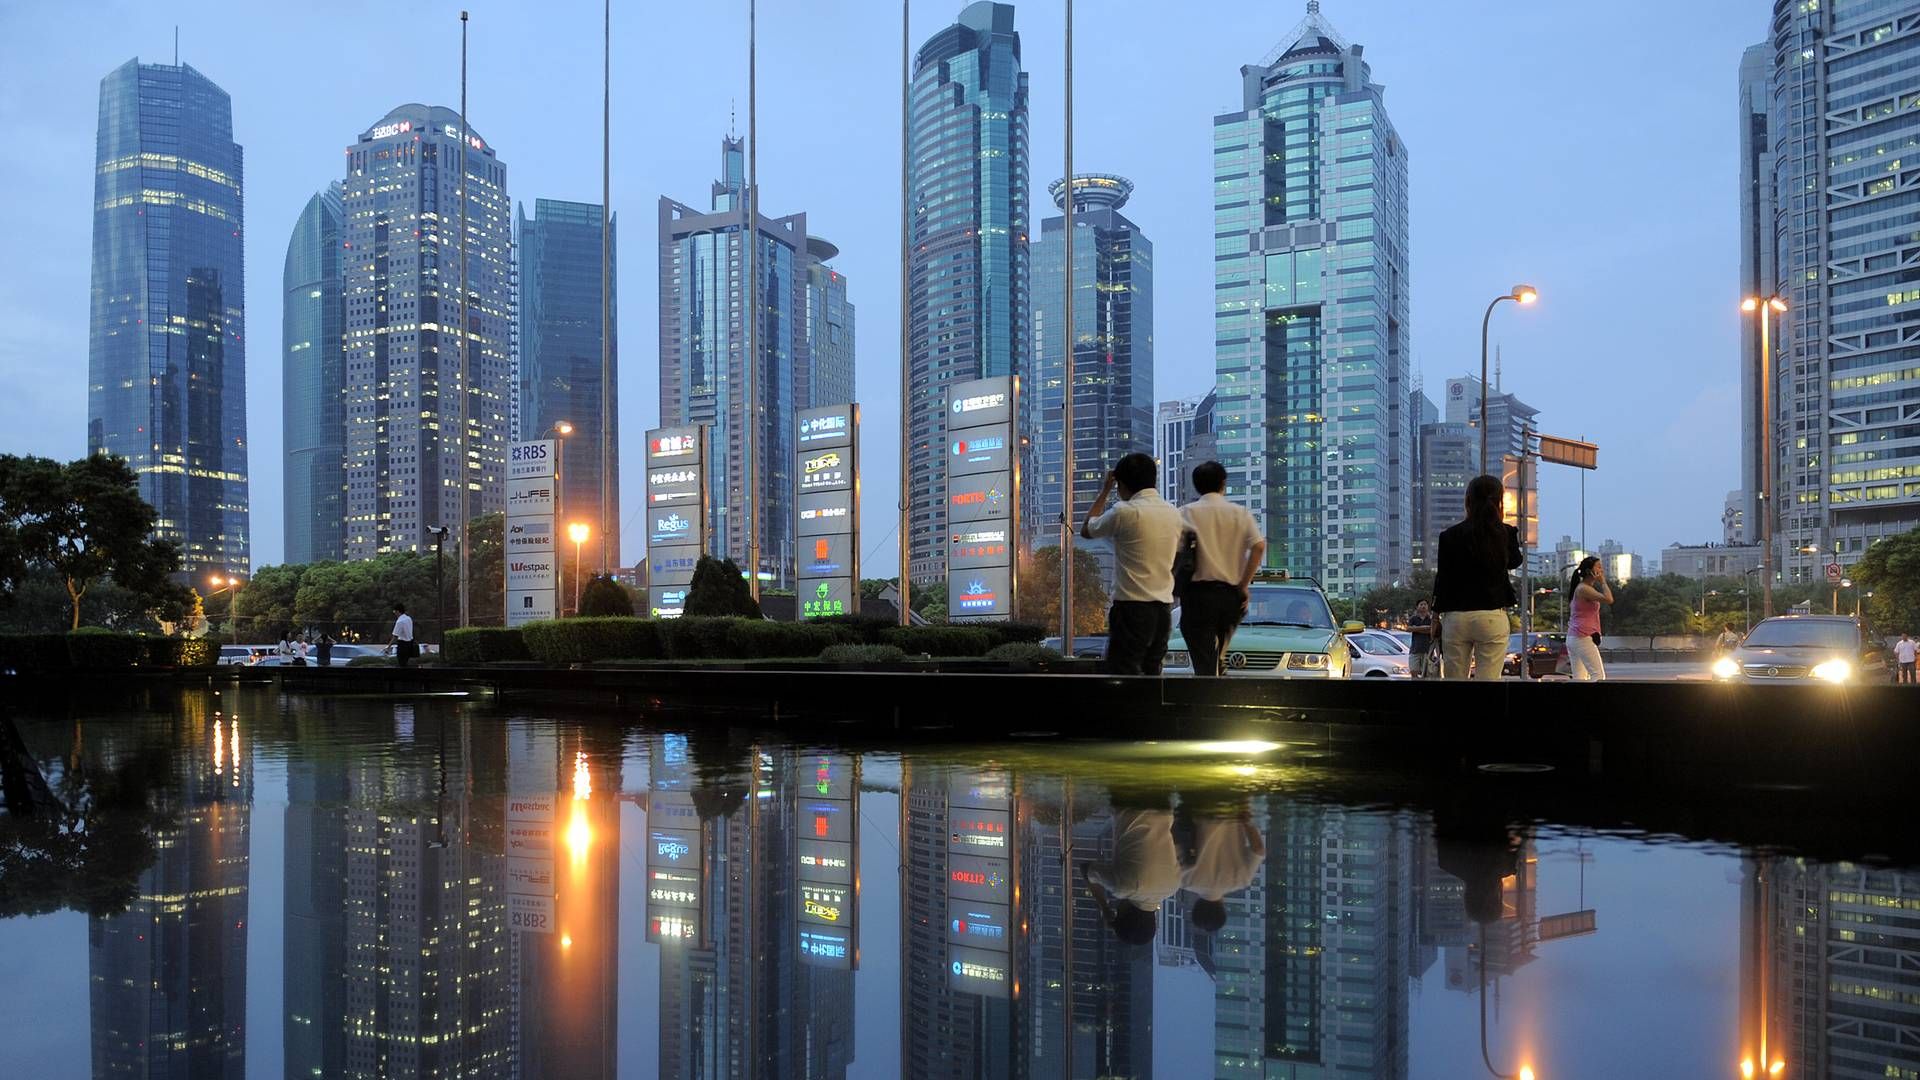 Skyline von Shanghai. | Foto: picture-alliance / Pressefoto ULMER/Robert Michael | Pressefoto ULMER/Robert Michael